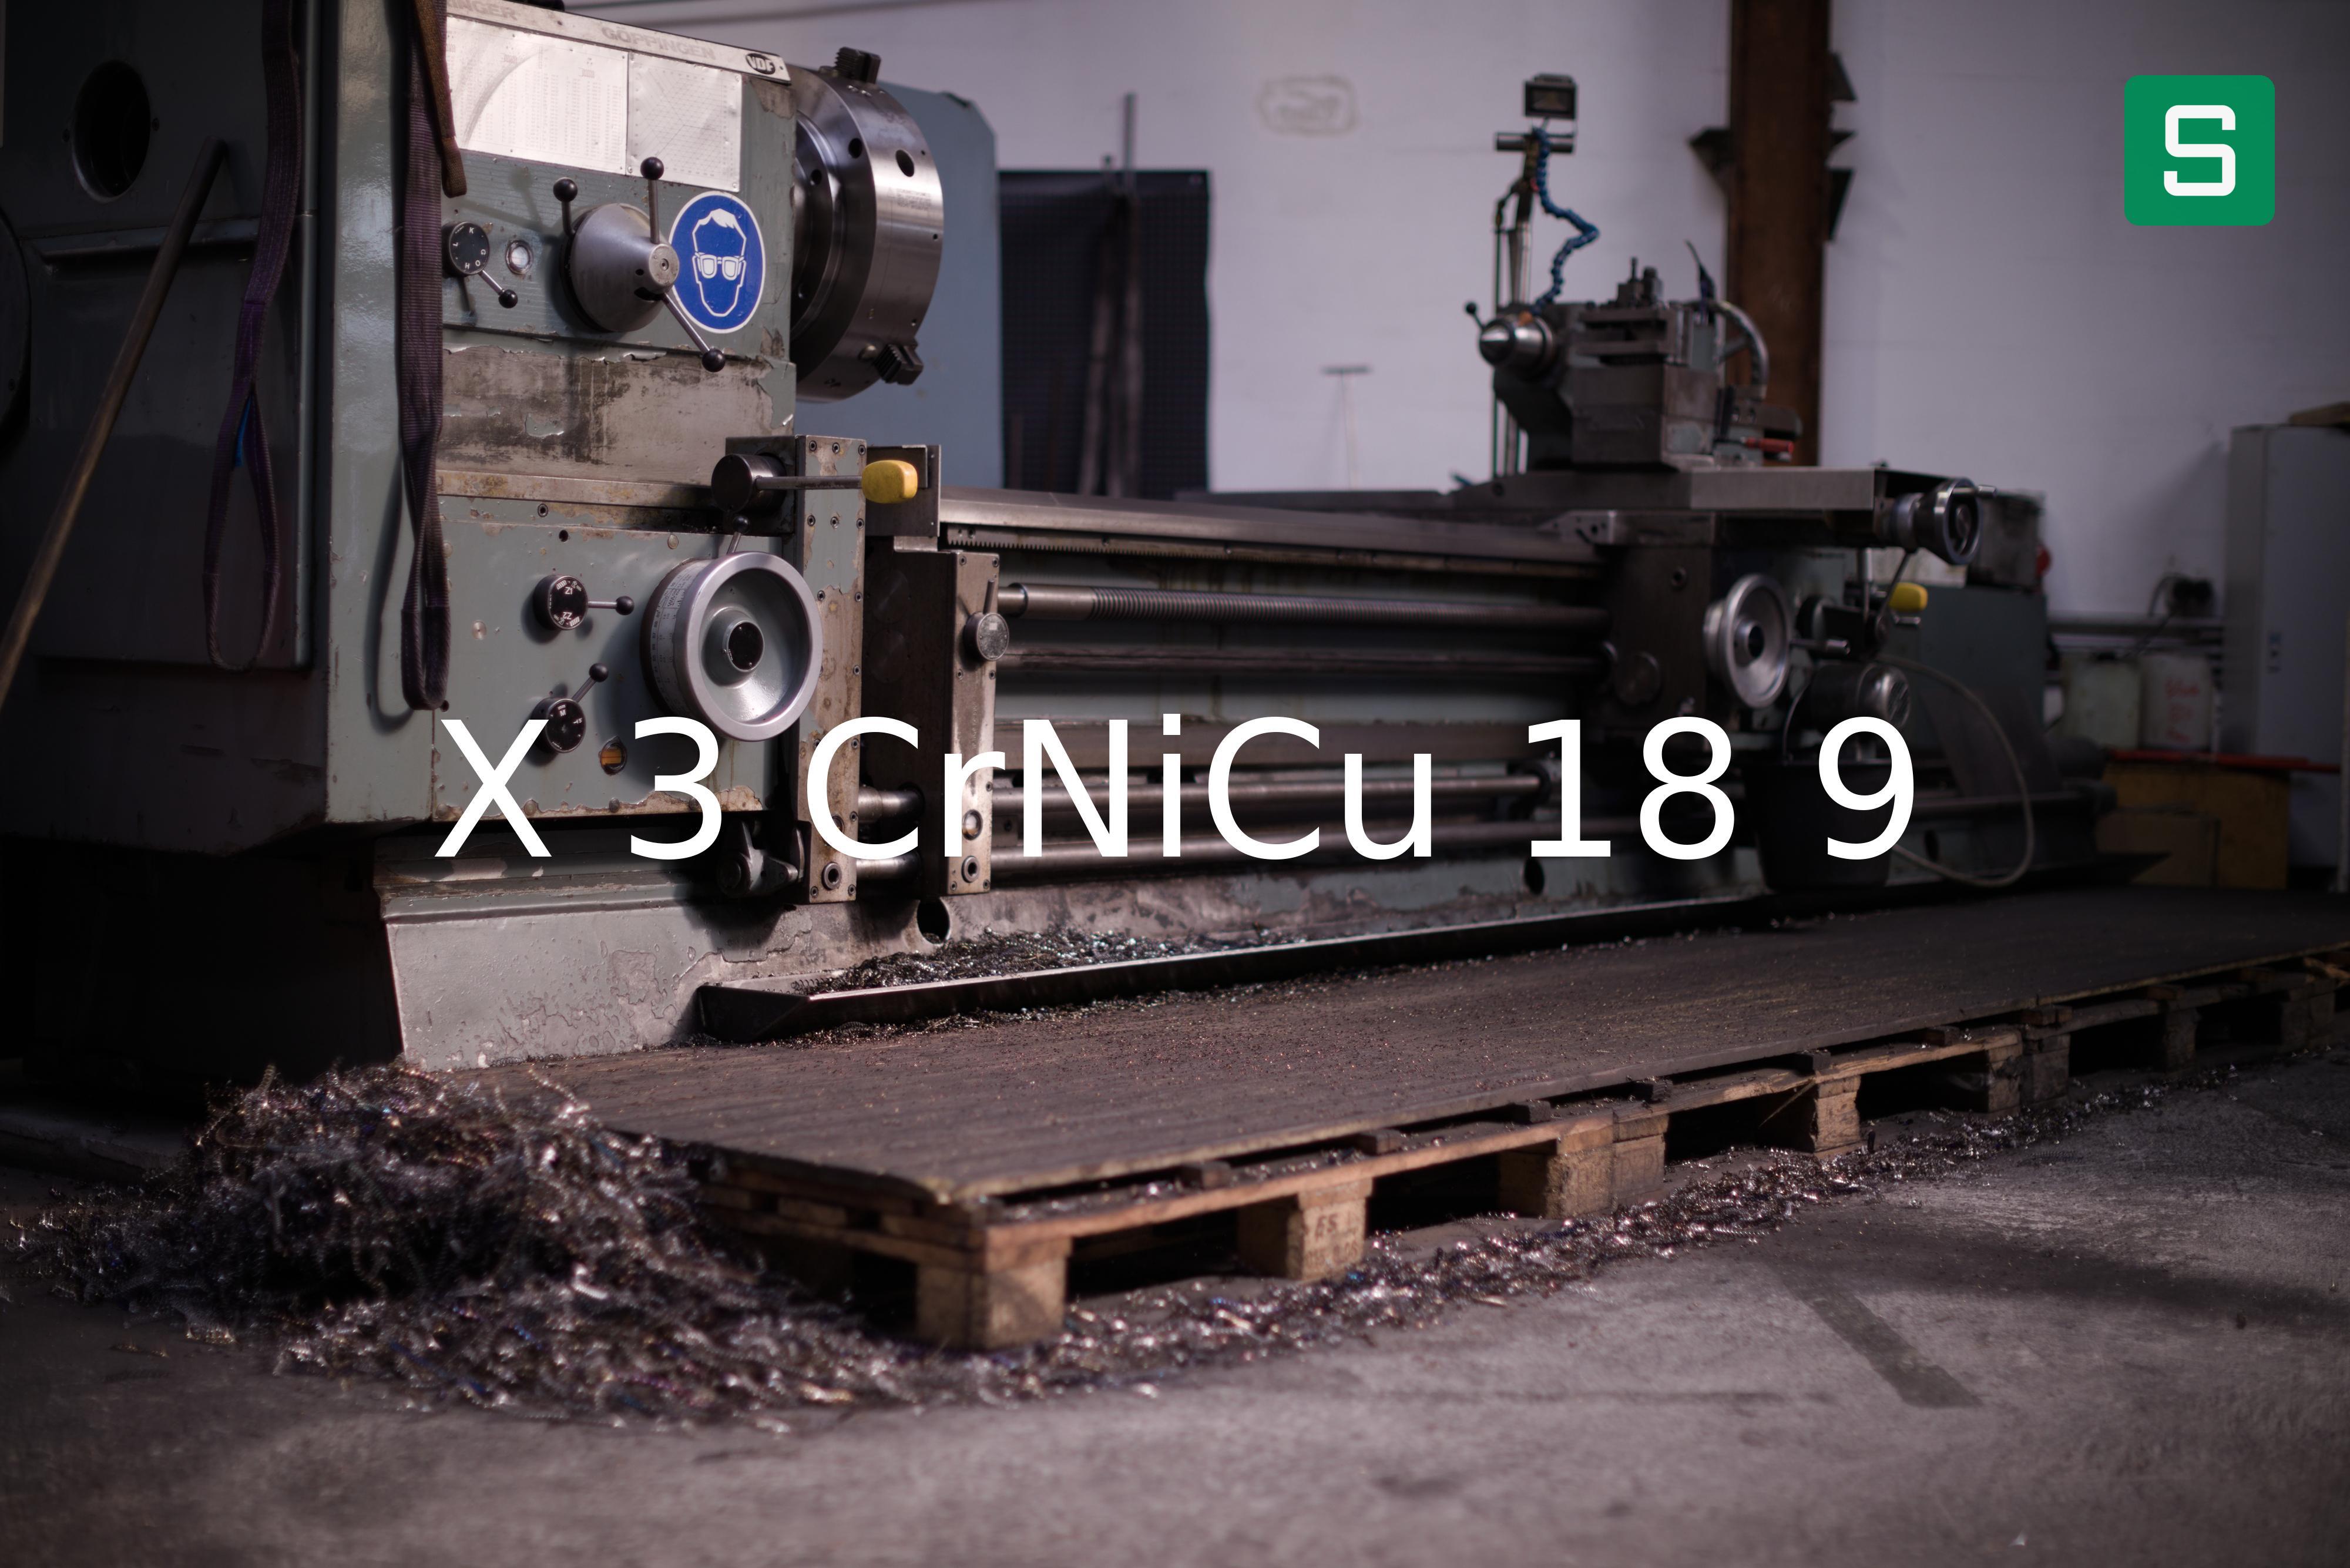 Steel Material: X 3 CrNiCu 18 9